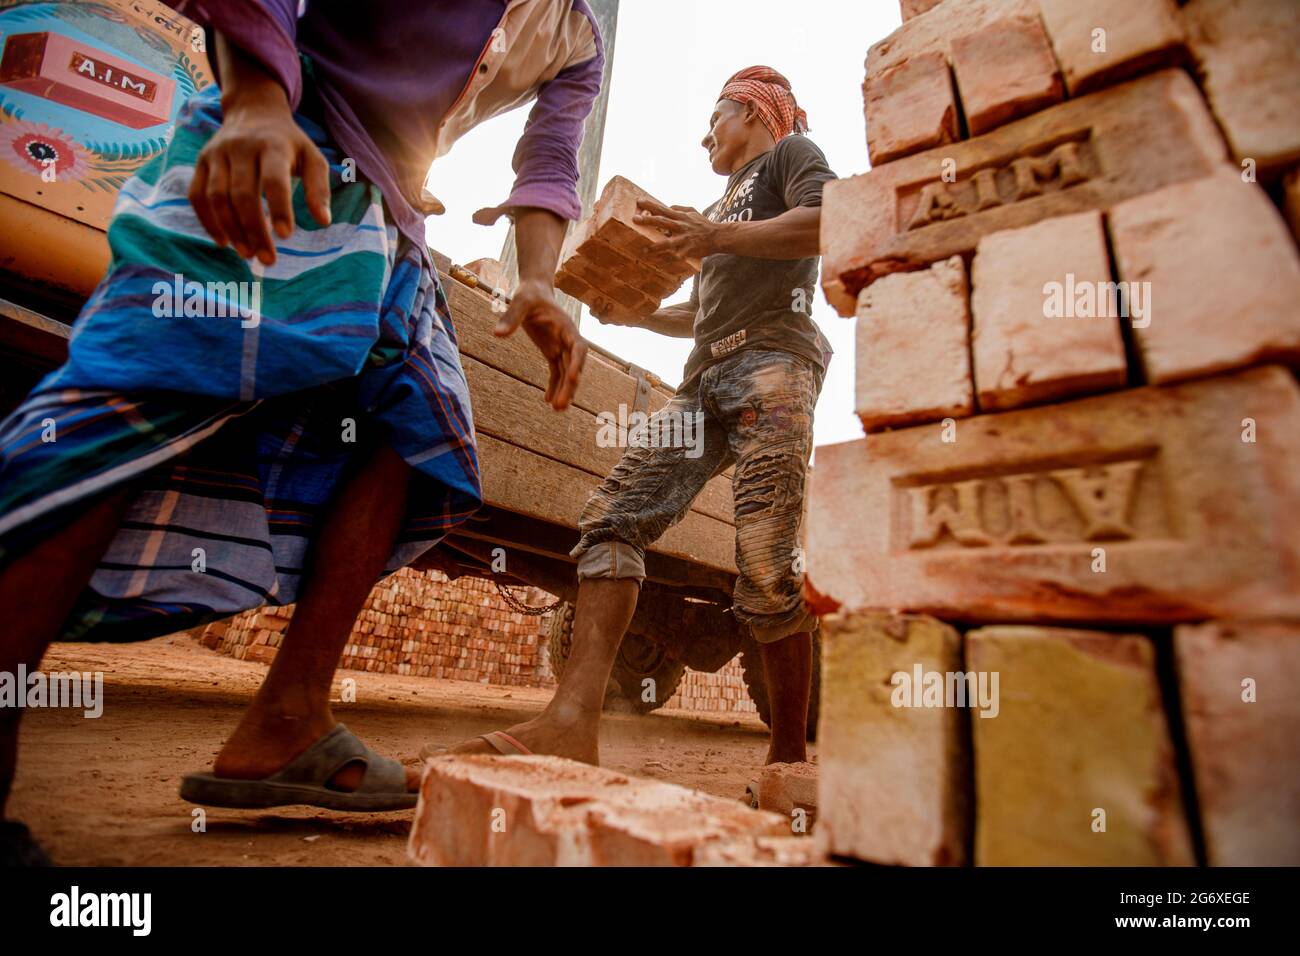 Les employés des fours à briques d'Ahulia empilent des briques fraîchement fabriquées sur des camions pour les expédier vers des sites de construction à Dhaka.en raison de la forte demande de matériaux de construction bon marché, la fabrication de briques en argile est devenue une industrie florissante au Bangladesh, avec des fours de fabrication fortement concentrés dans les périphéries de grandes villes. Ces sites de fabrication, connus sous le nom de brickfields, fonctionnent à l'aide de technologies vieilles de plusieurs siècles qui expulsent la poussière, les cendres, la fumée noire et d'autres polluants dans l'atmosphère Banque D'Images